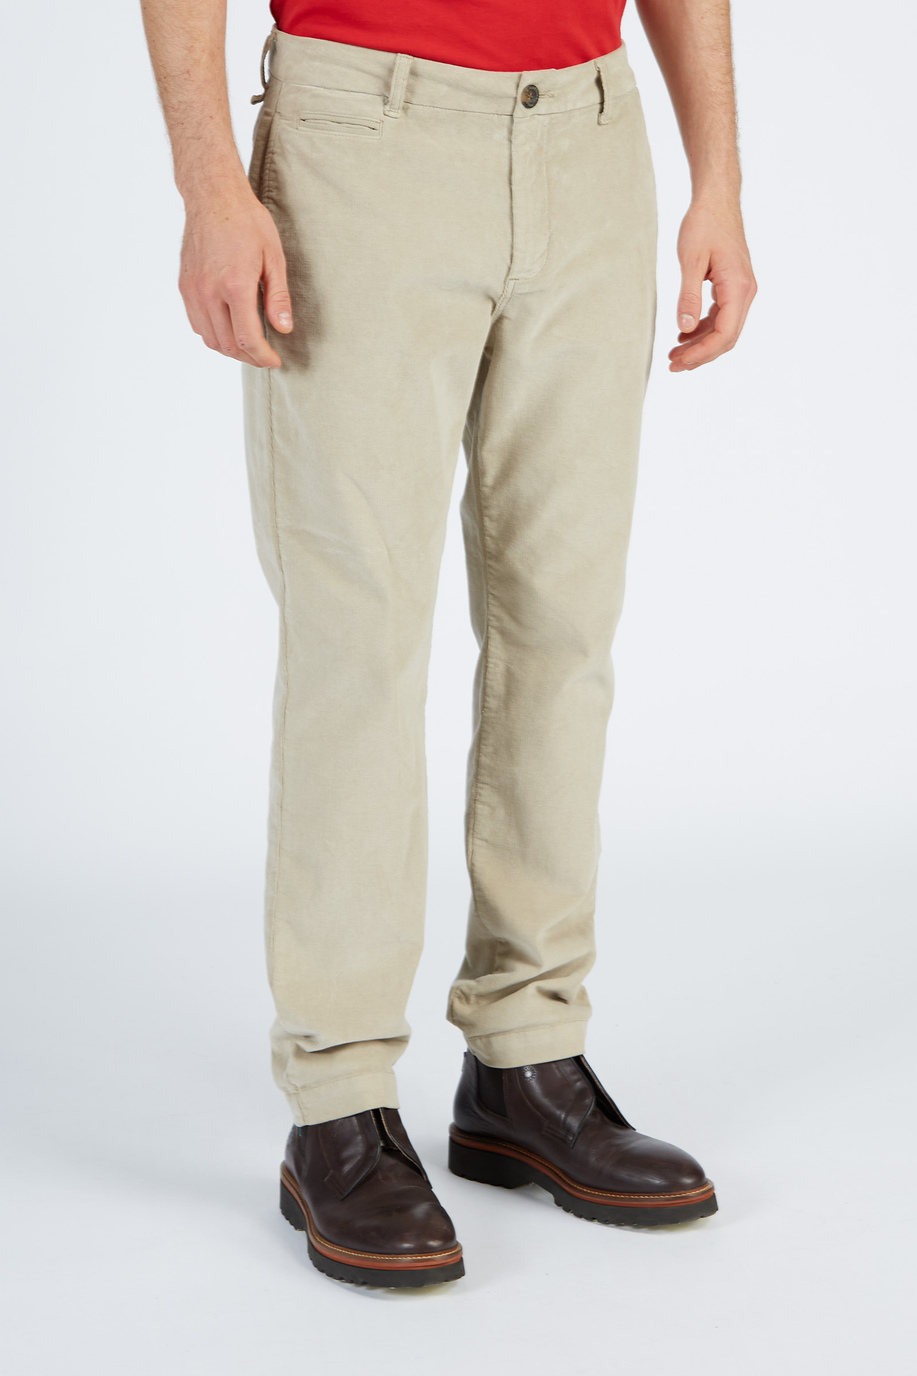 Pantalone da uomo modello 5 tasche in velluto a coste regular fit - Leyendas del Polo | La Martina - Official Online Shop